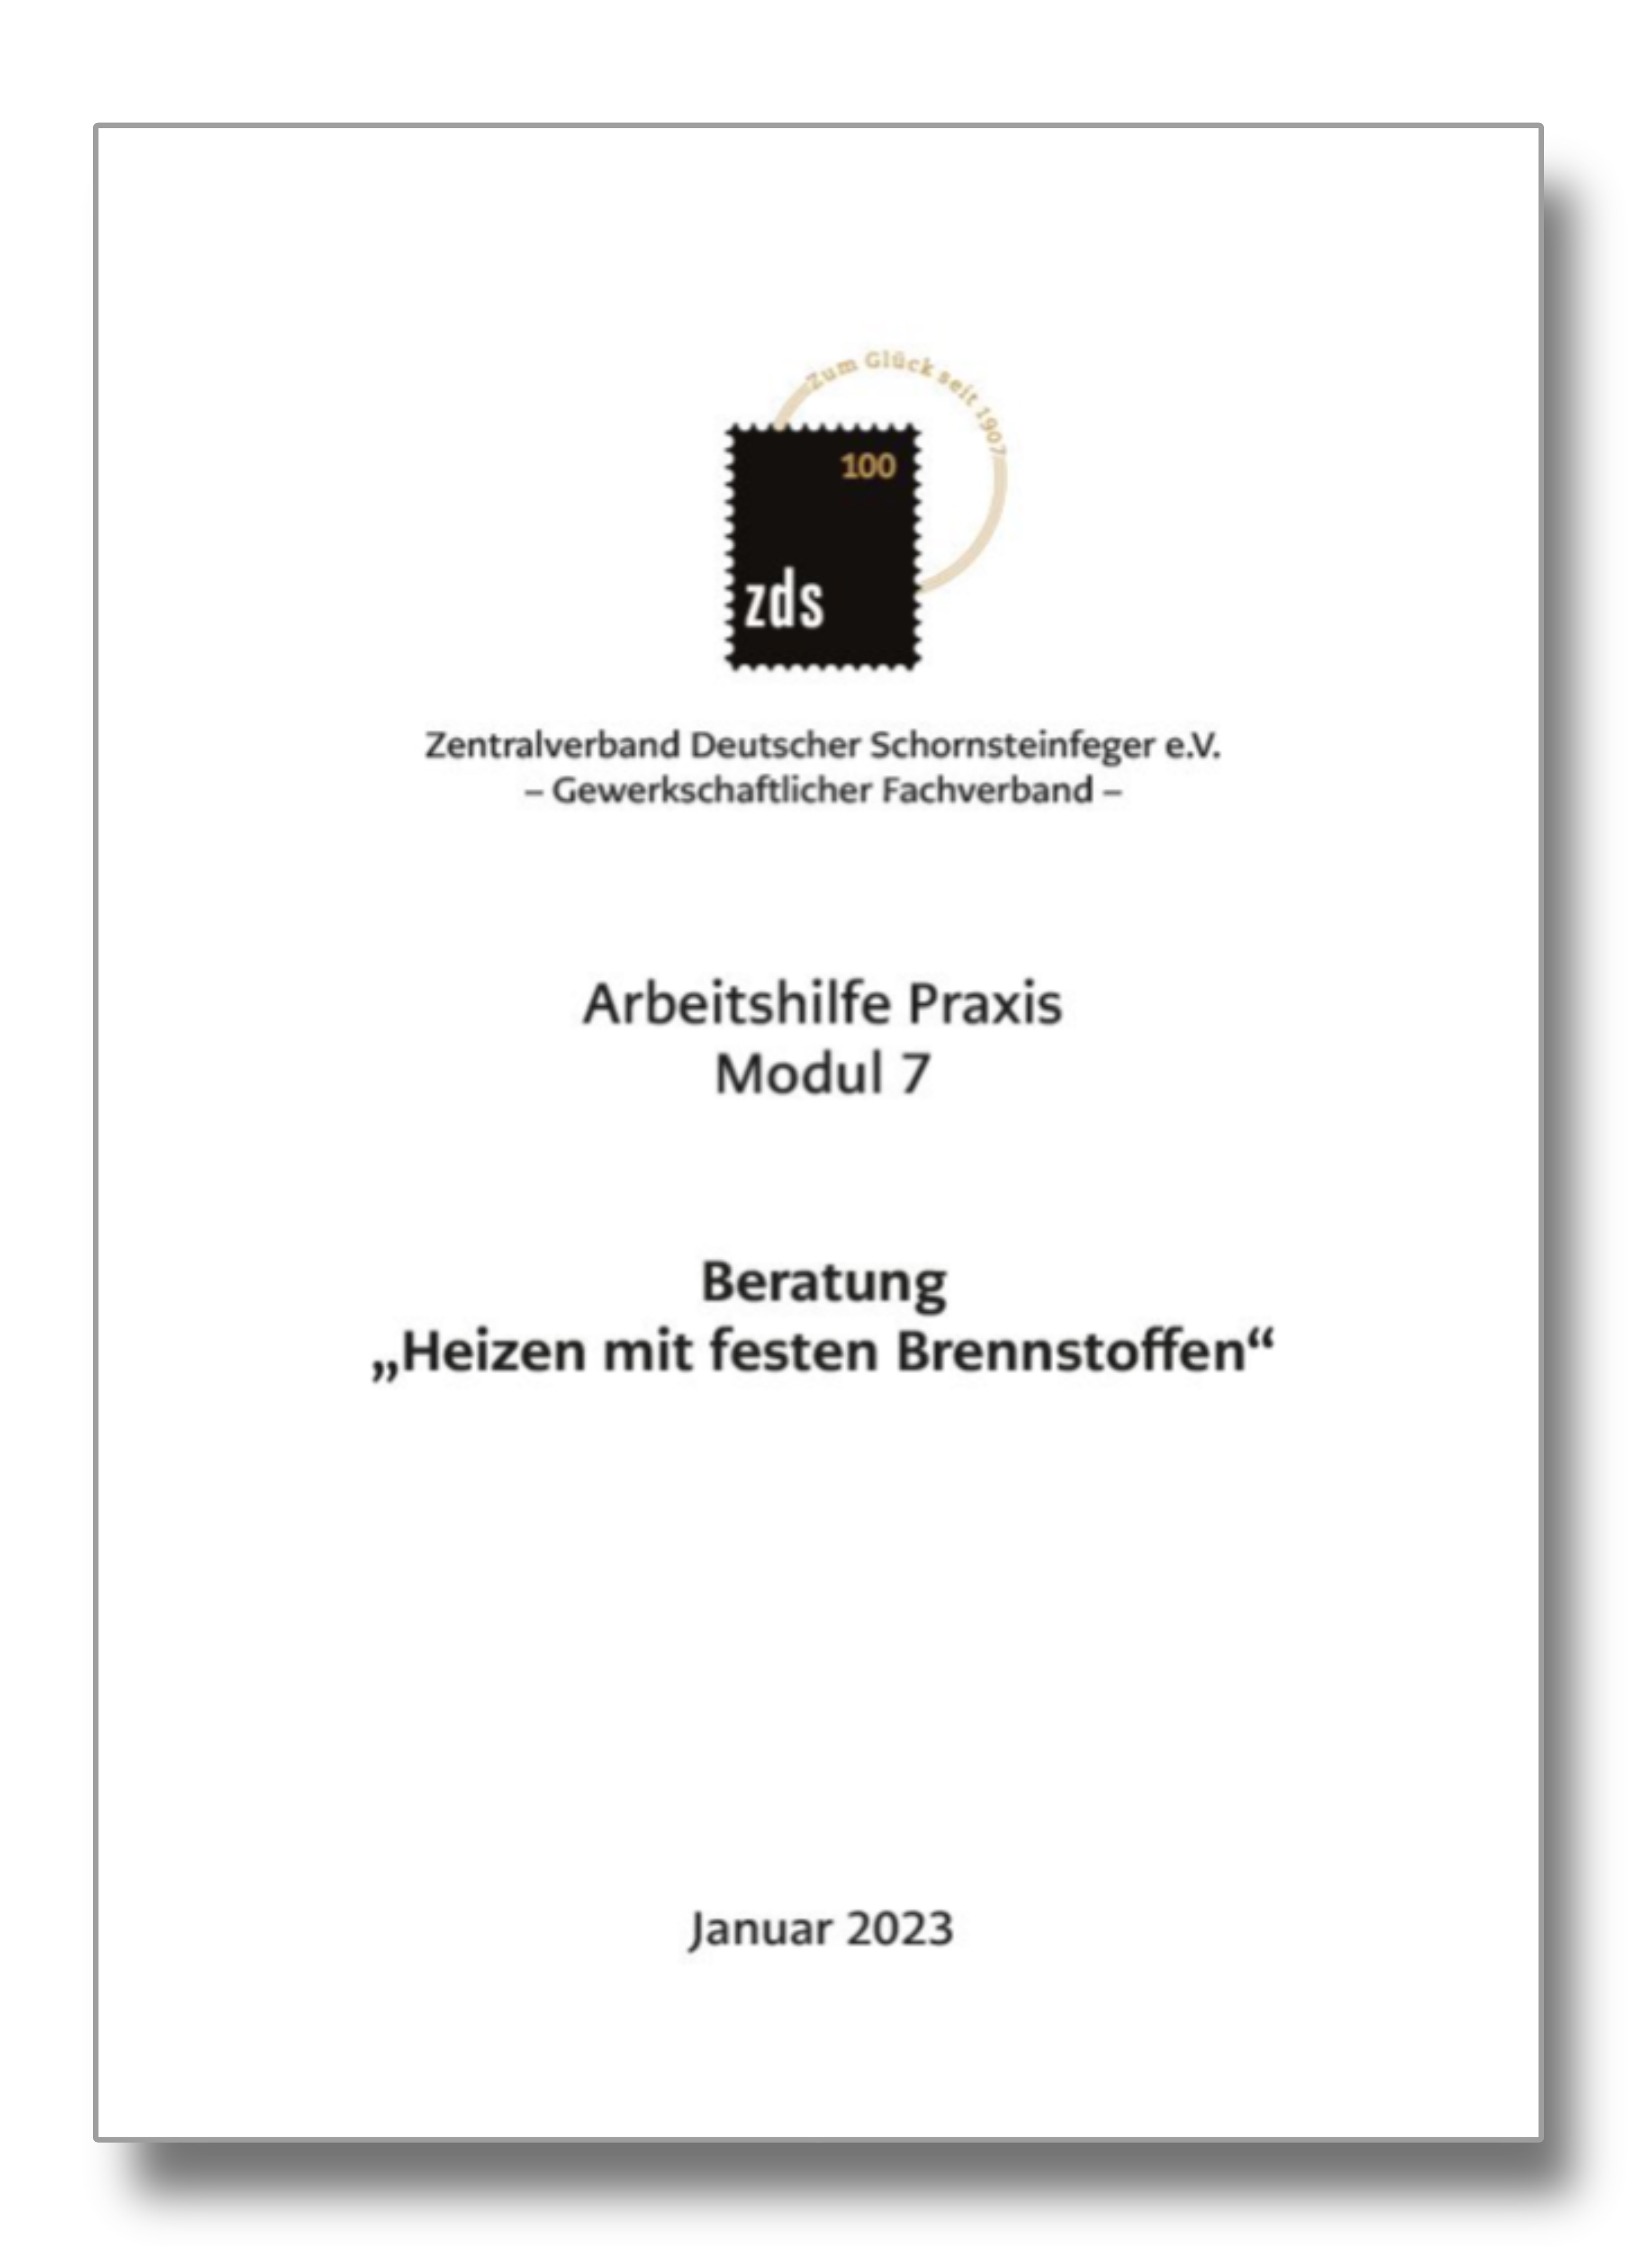 ZDS AH P Modul 7* – Beratung "Heizen mit festen Brennstoffen" - Arbeitskarte